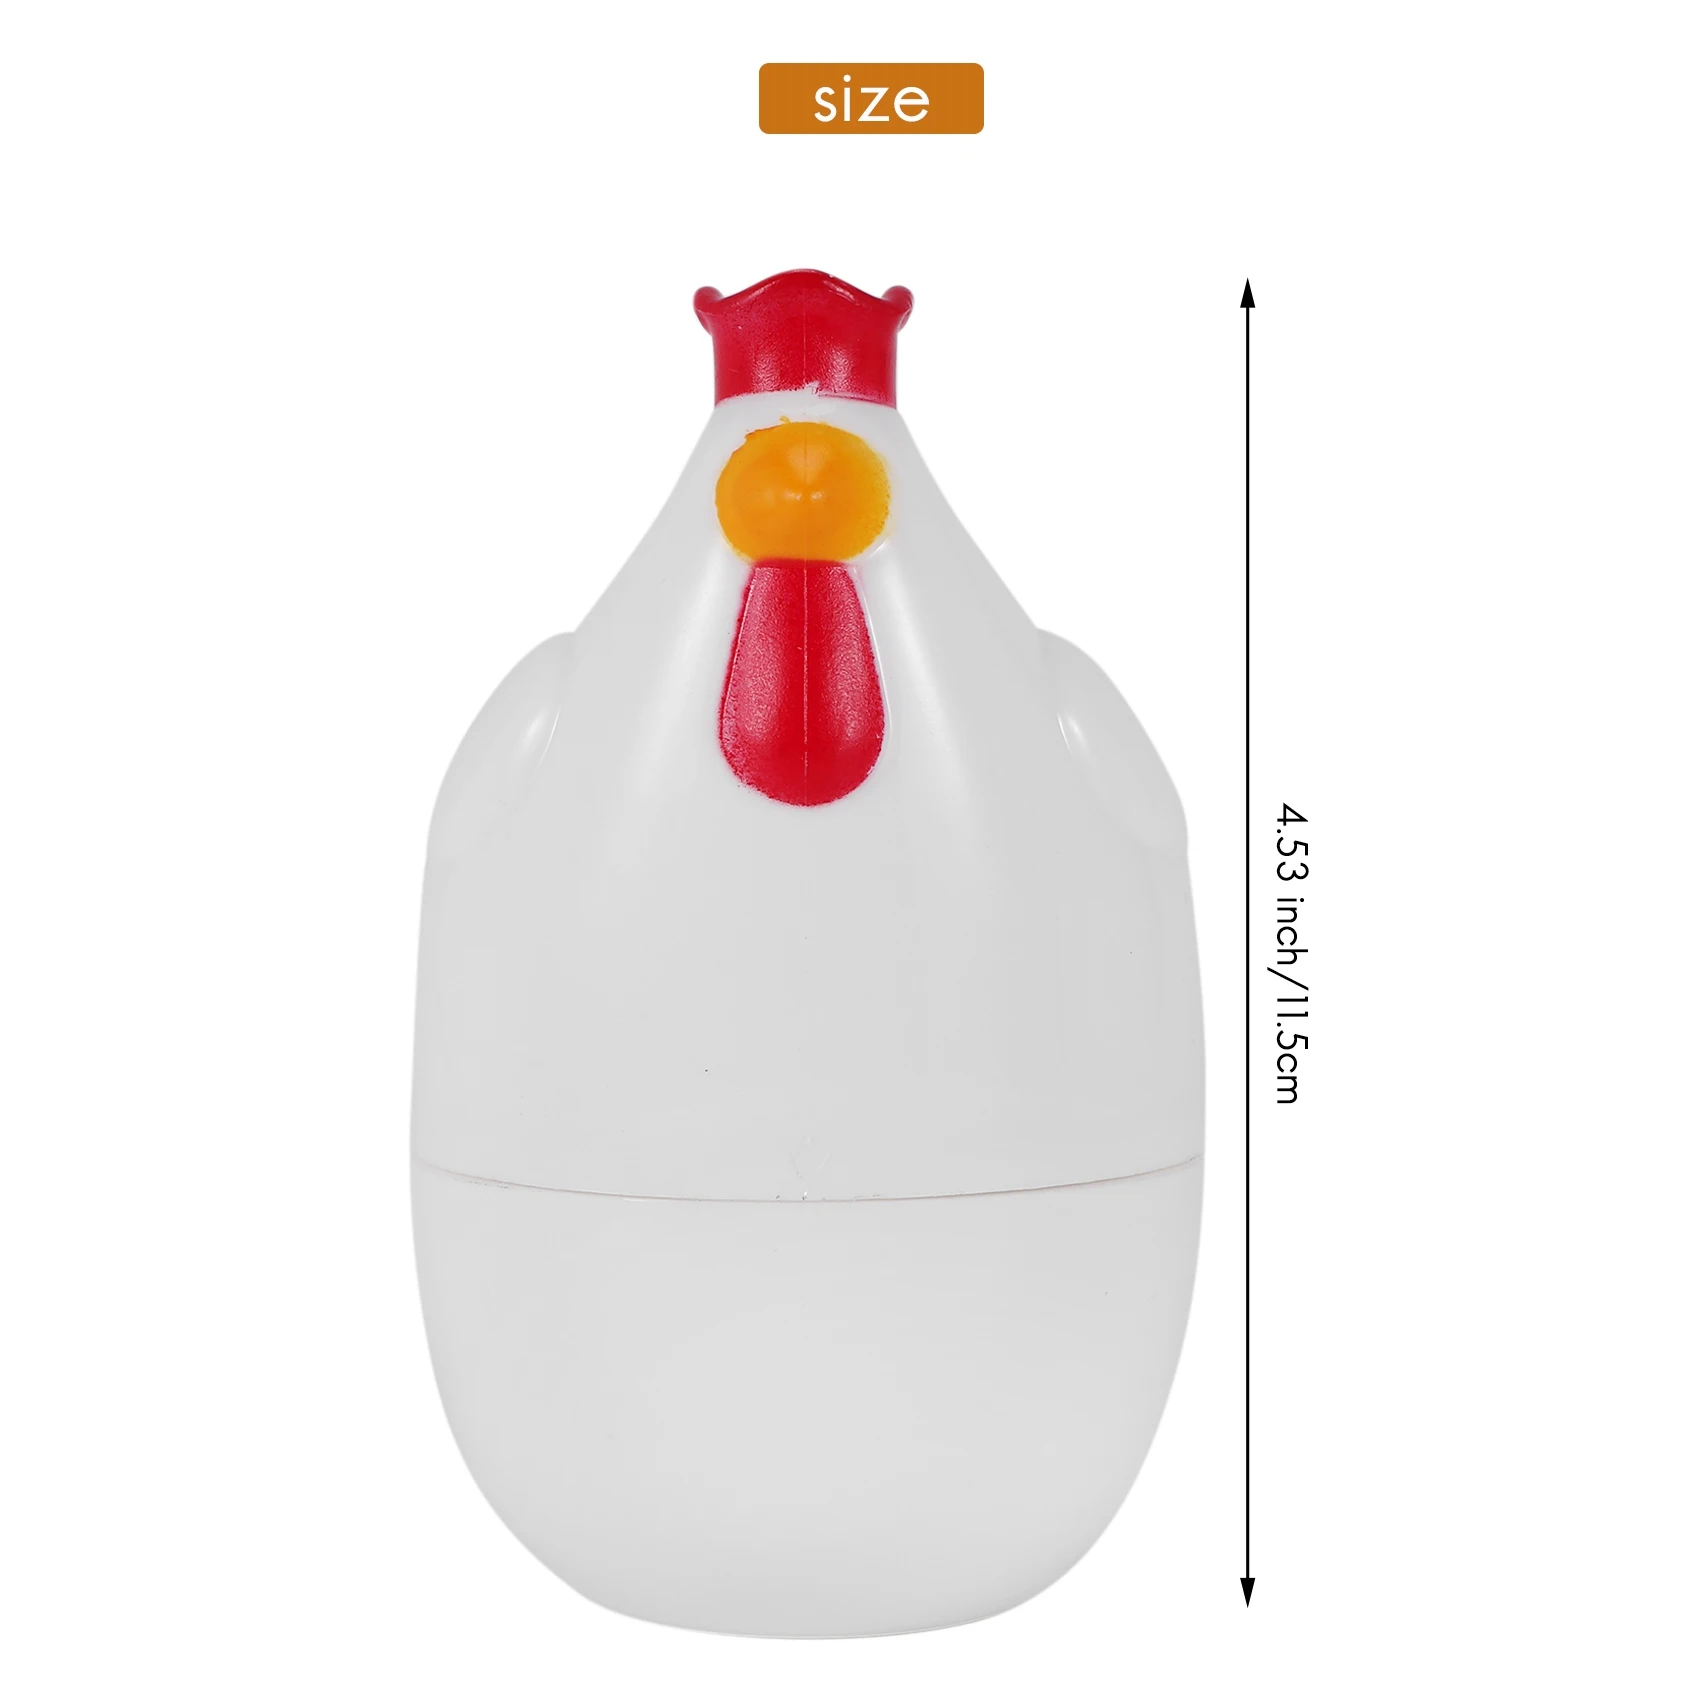 Пароварка для вареных яиц в форме цыпленка, 1 пароварка, пестик, микроволновая печь, яйцеварка, инструменты для приготовления пищи, кухонные гаджеты, аксессуары, инструменты